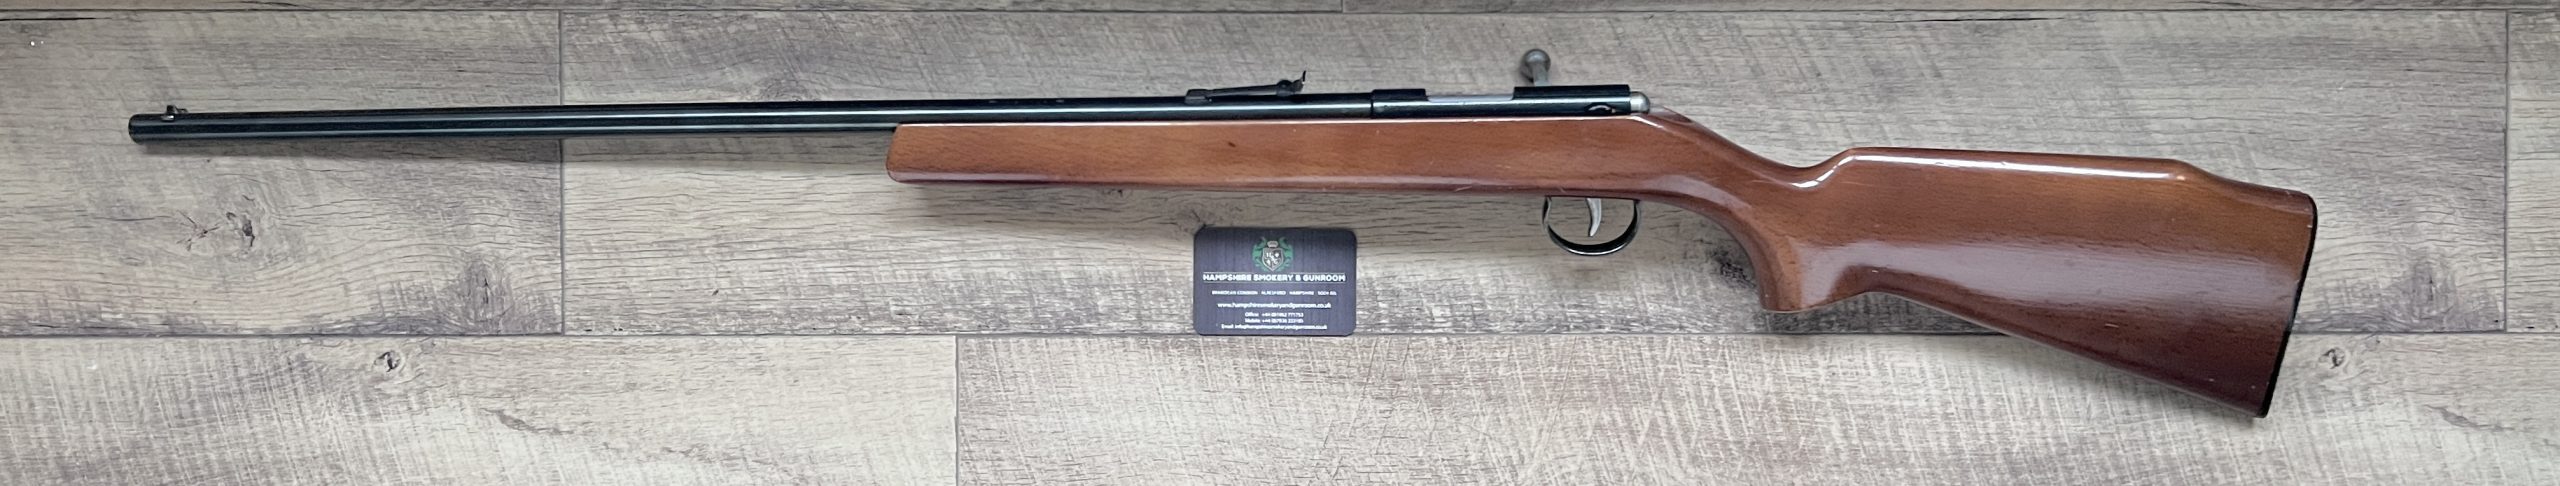 Anschutz 9mm Garden Gun